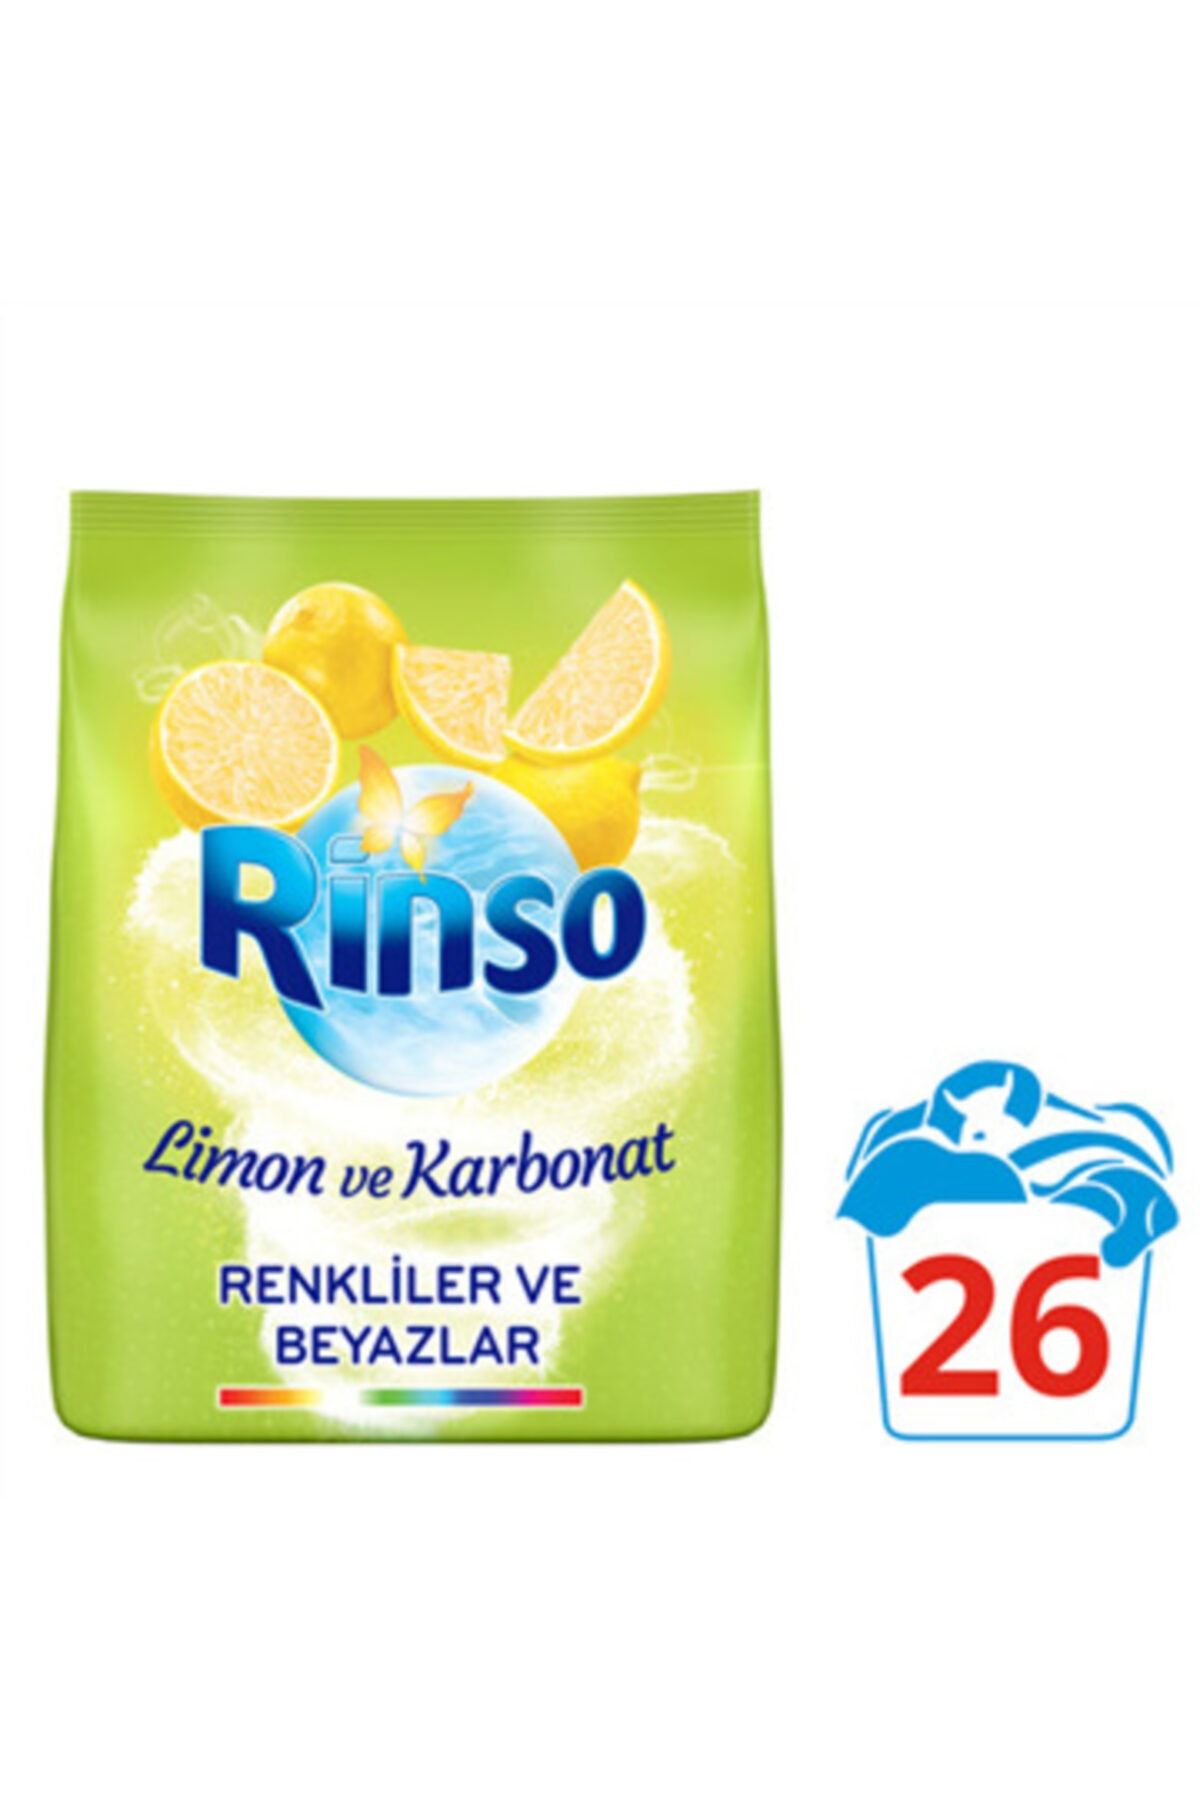 Rinso Limon ve Karbonat Renkliler ve Beyazlar İçin Toz Çamaşır Deterjanı 4 kg 26 Yıkama